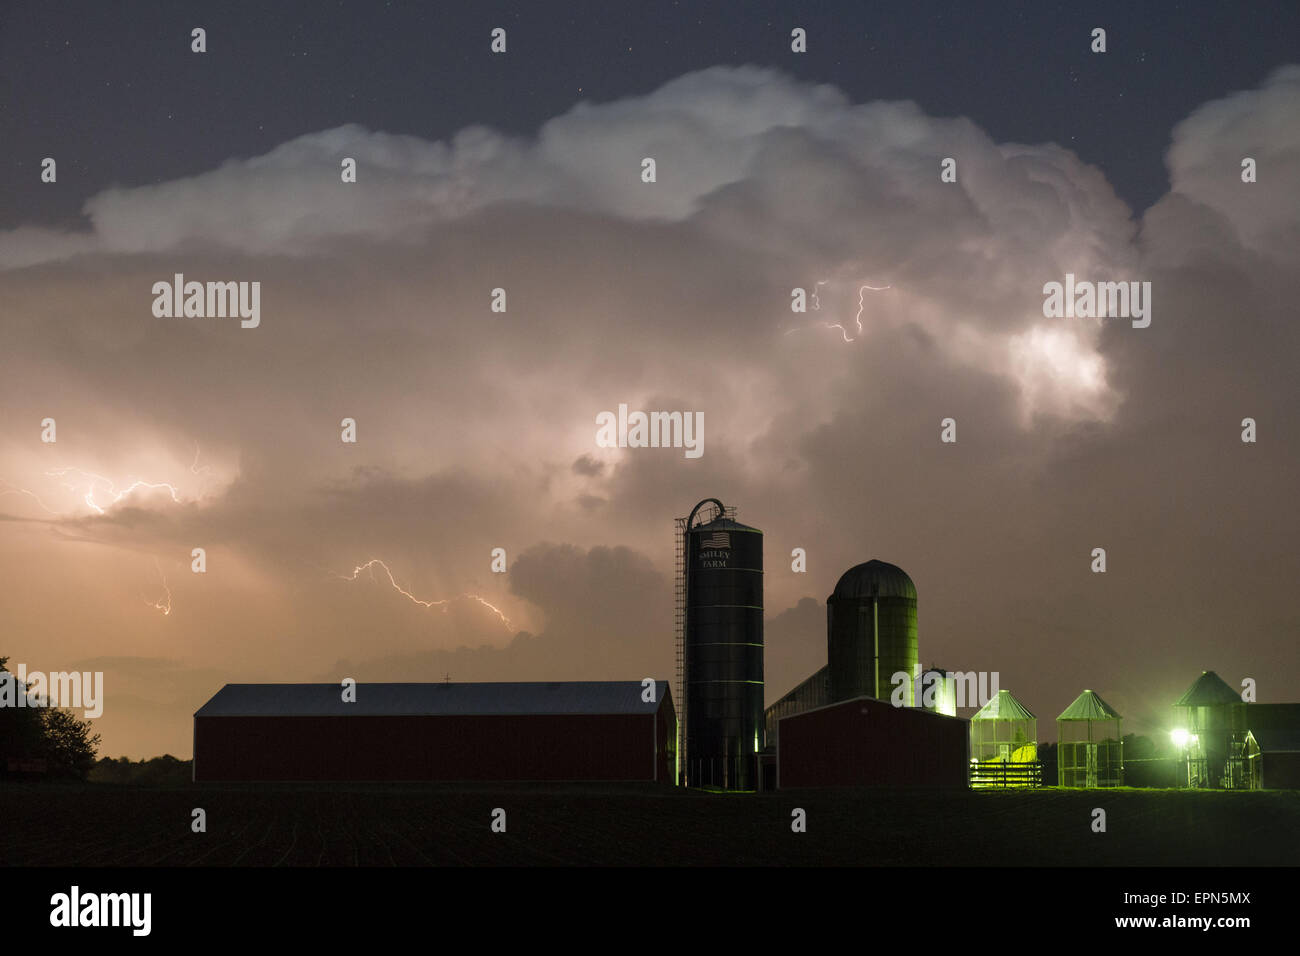 Città di Wallkill, N.Y, STATI UNITI D'AMERICA. 19 Maggio, 2015. Il fulmine lampeggia tra le nuvole sopra la stalla e i silos di una fattoria nella città di Wallkill, New York, durante una tempesta di primavera. © Tom Bushey/ZUMA filo/Alamy Live News Foto Stock